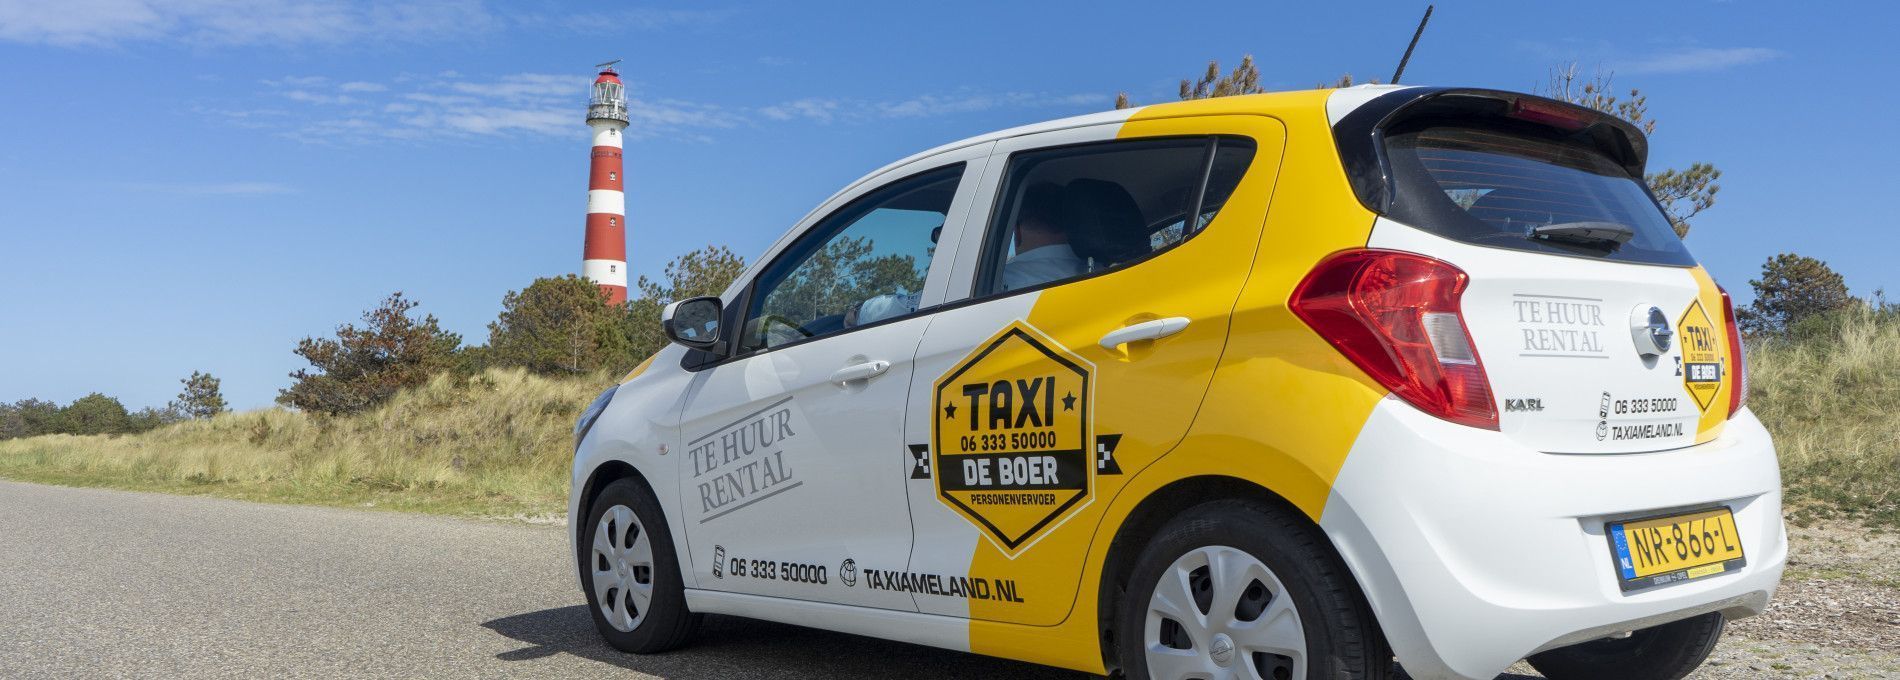 Autoverhuur Ameland (Car hire) - Tourist Information 